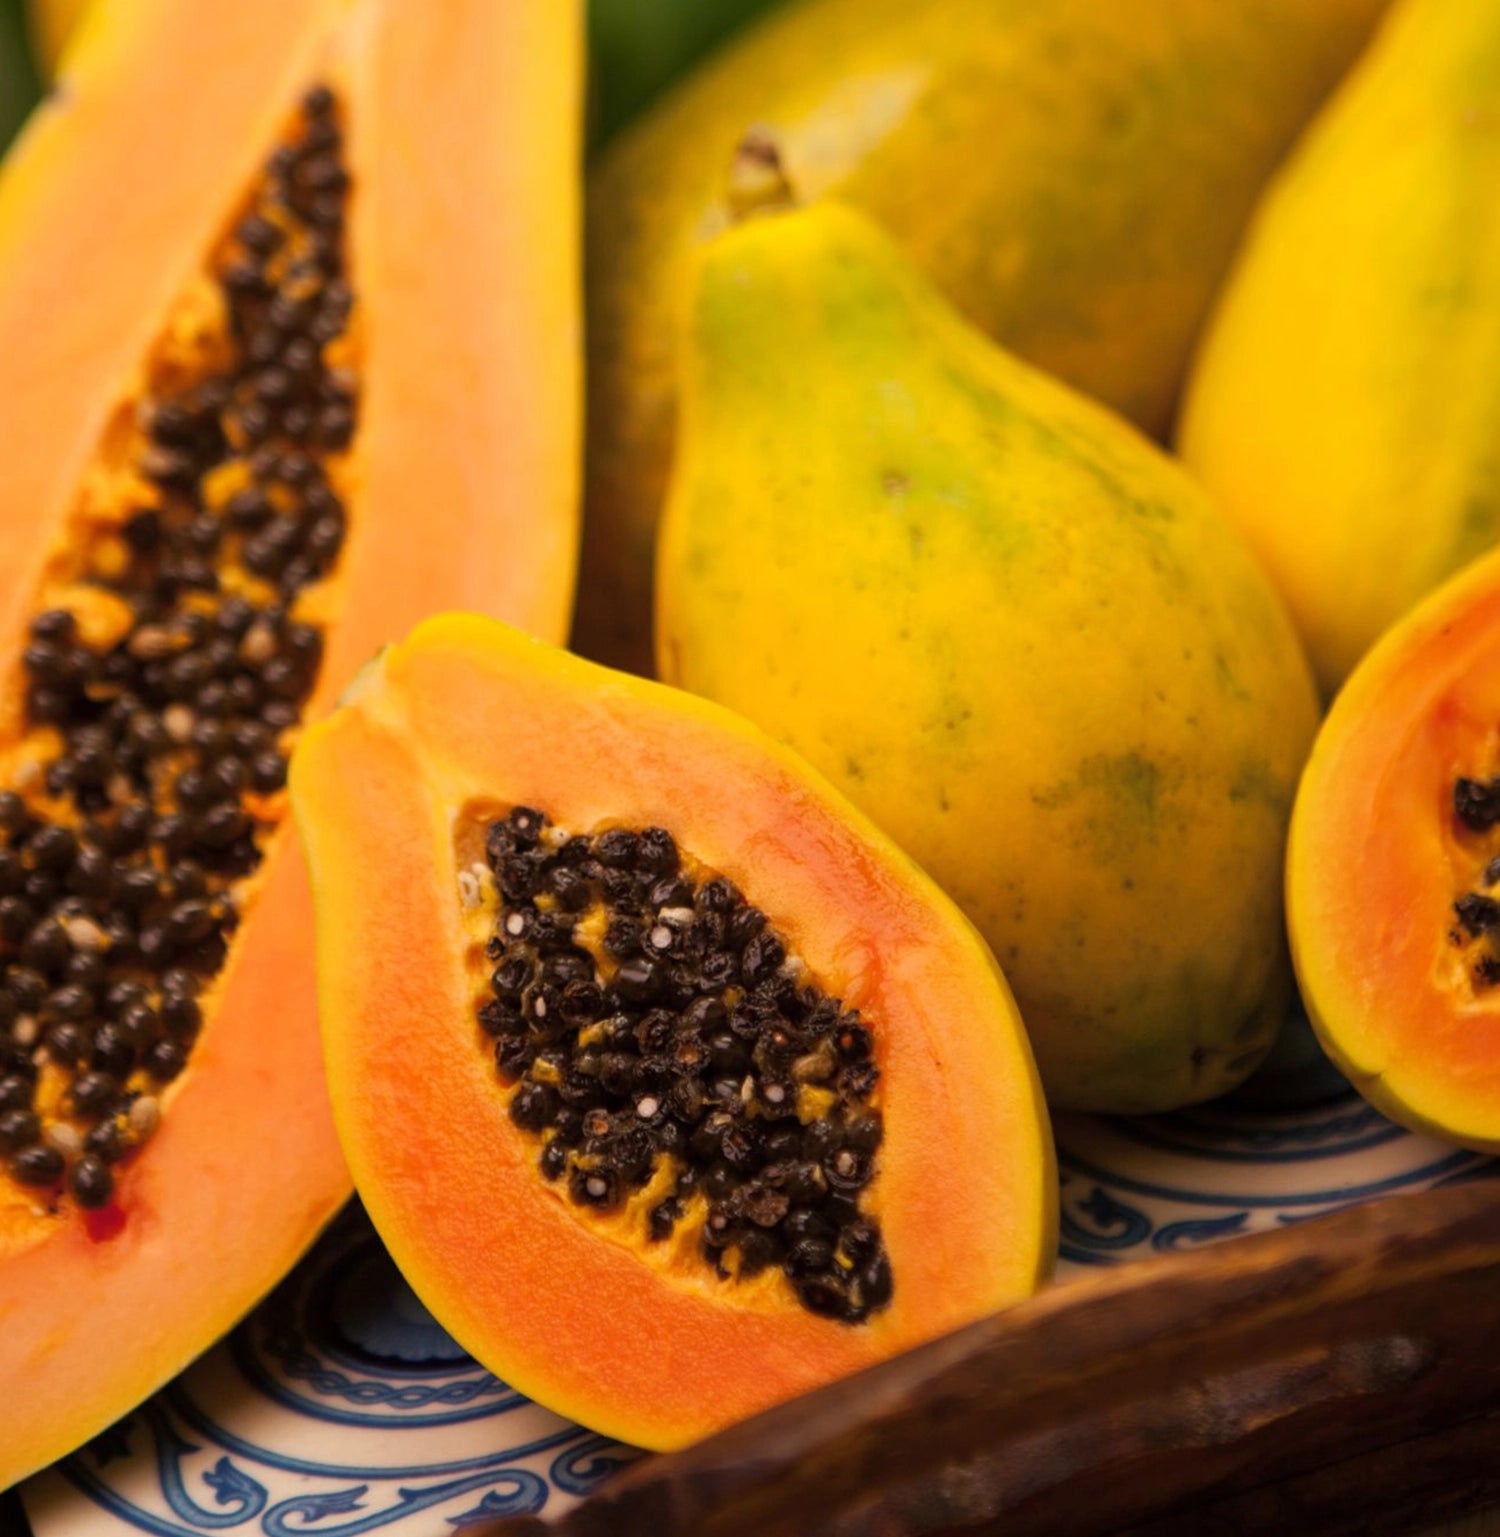 papaya enzyme